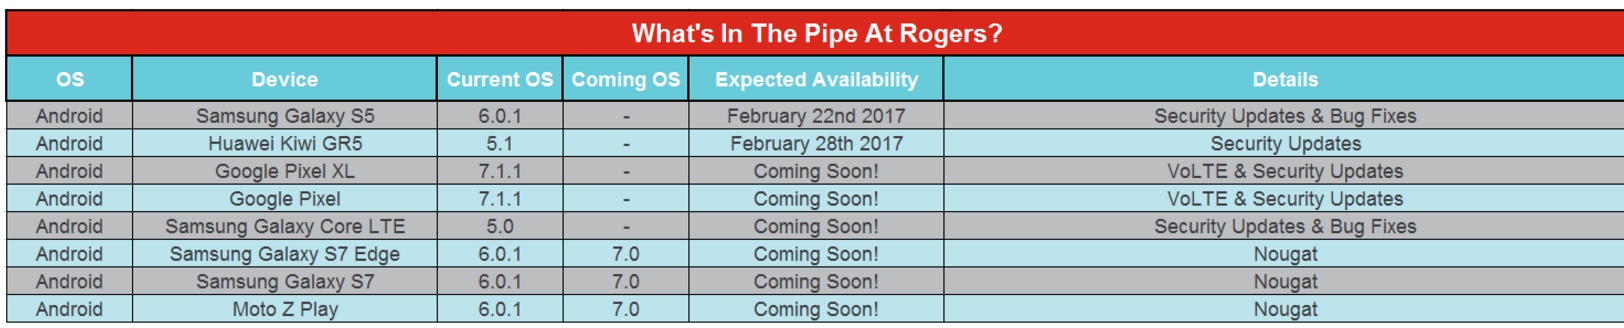 Rogers update schedule